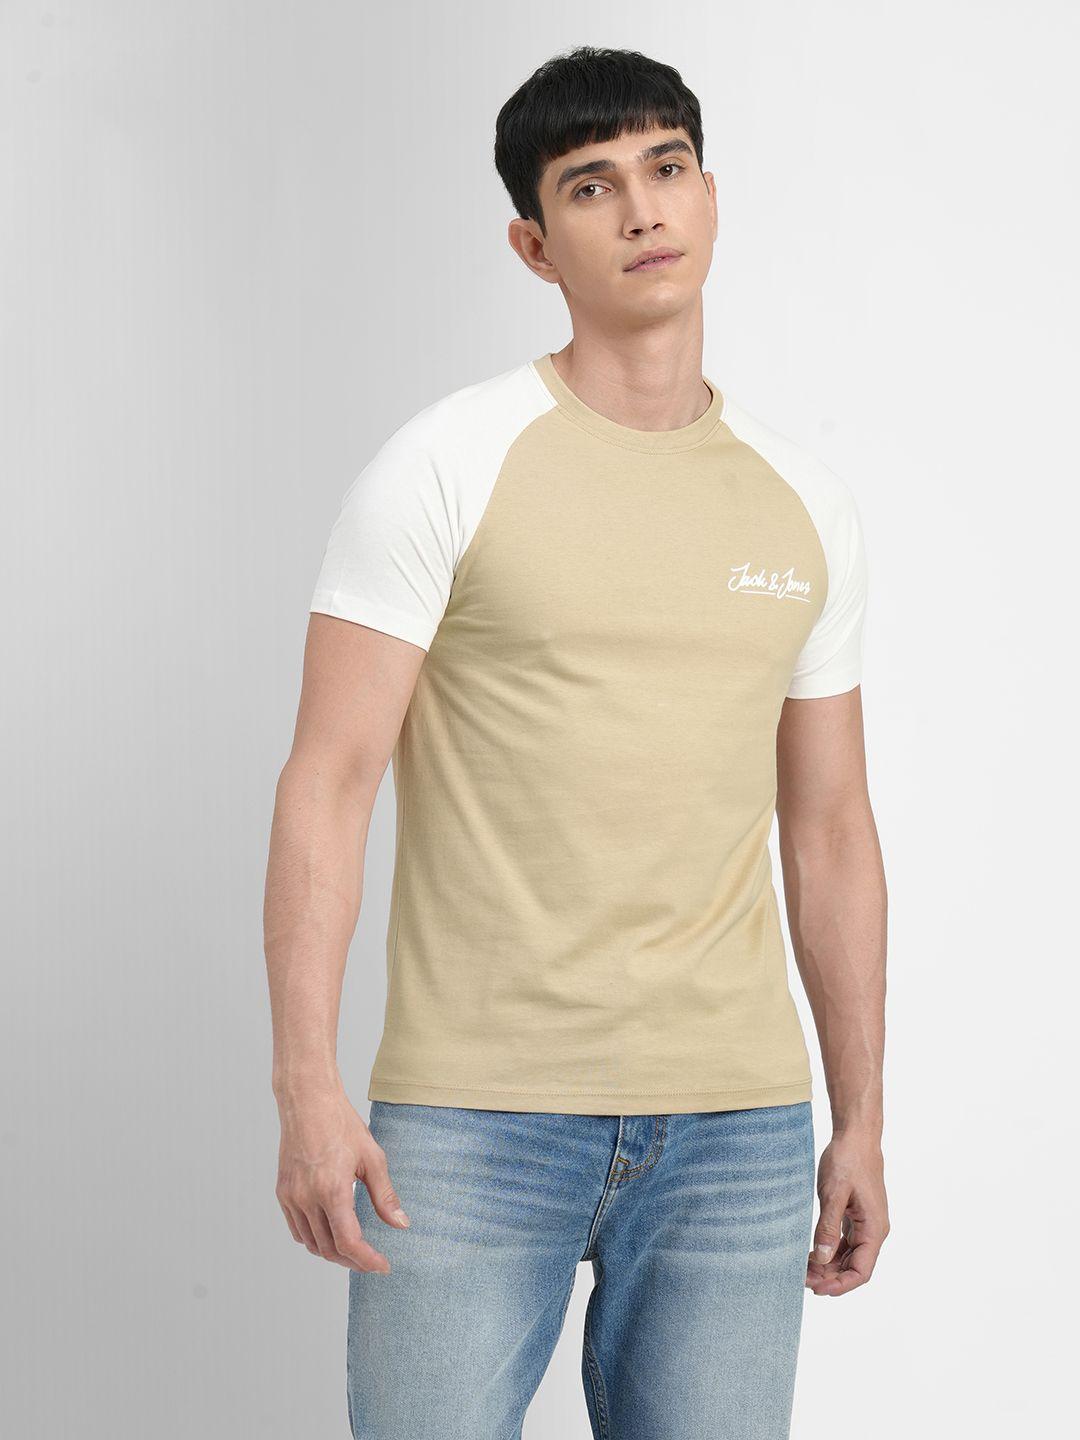 jack & jones men white & beige colourblocked slim fit pure cotton t-shirt